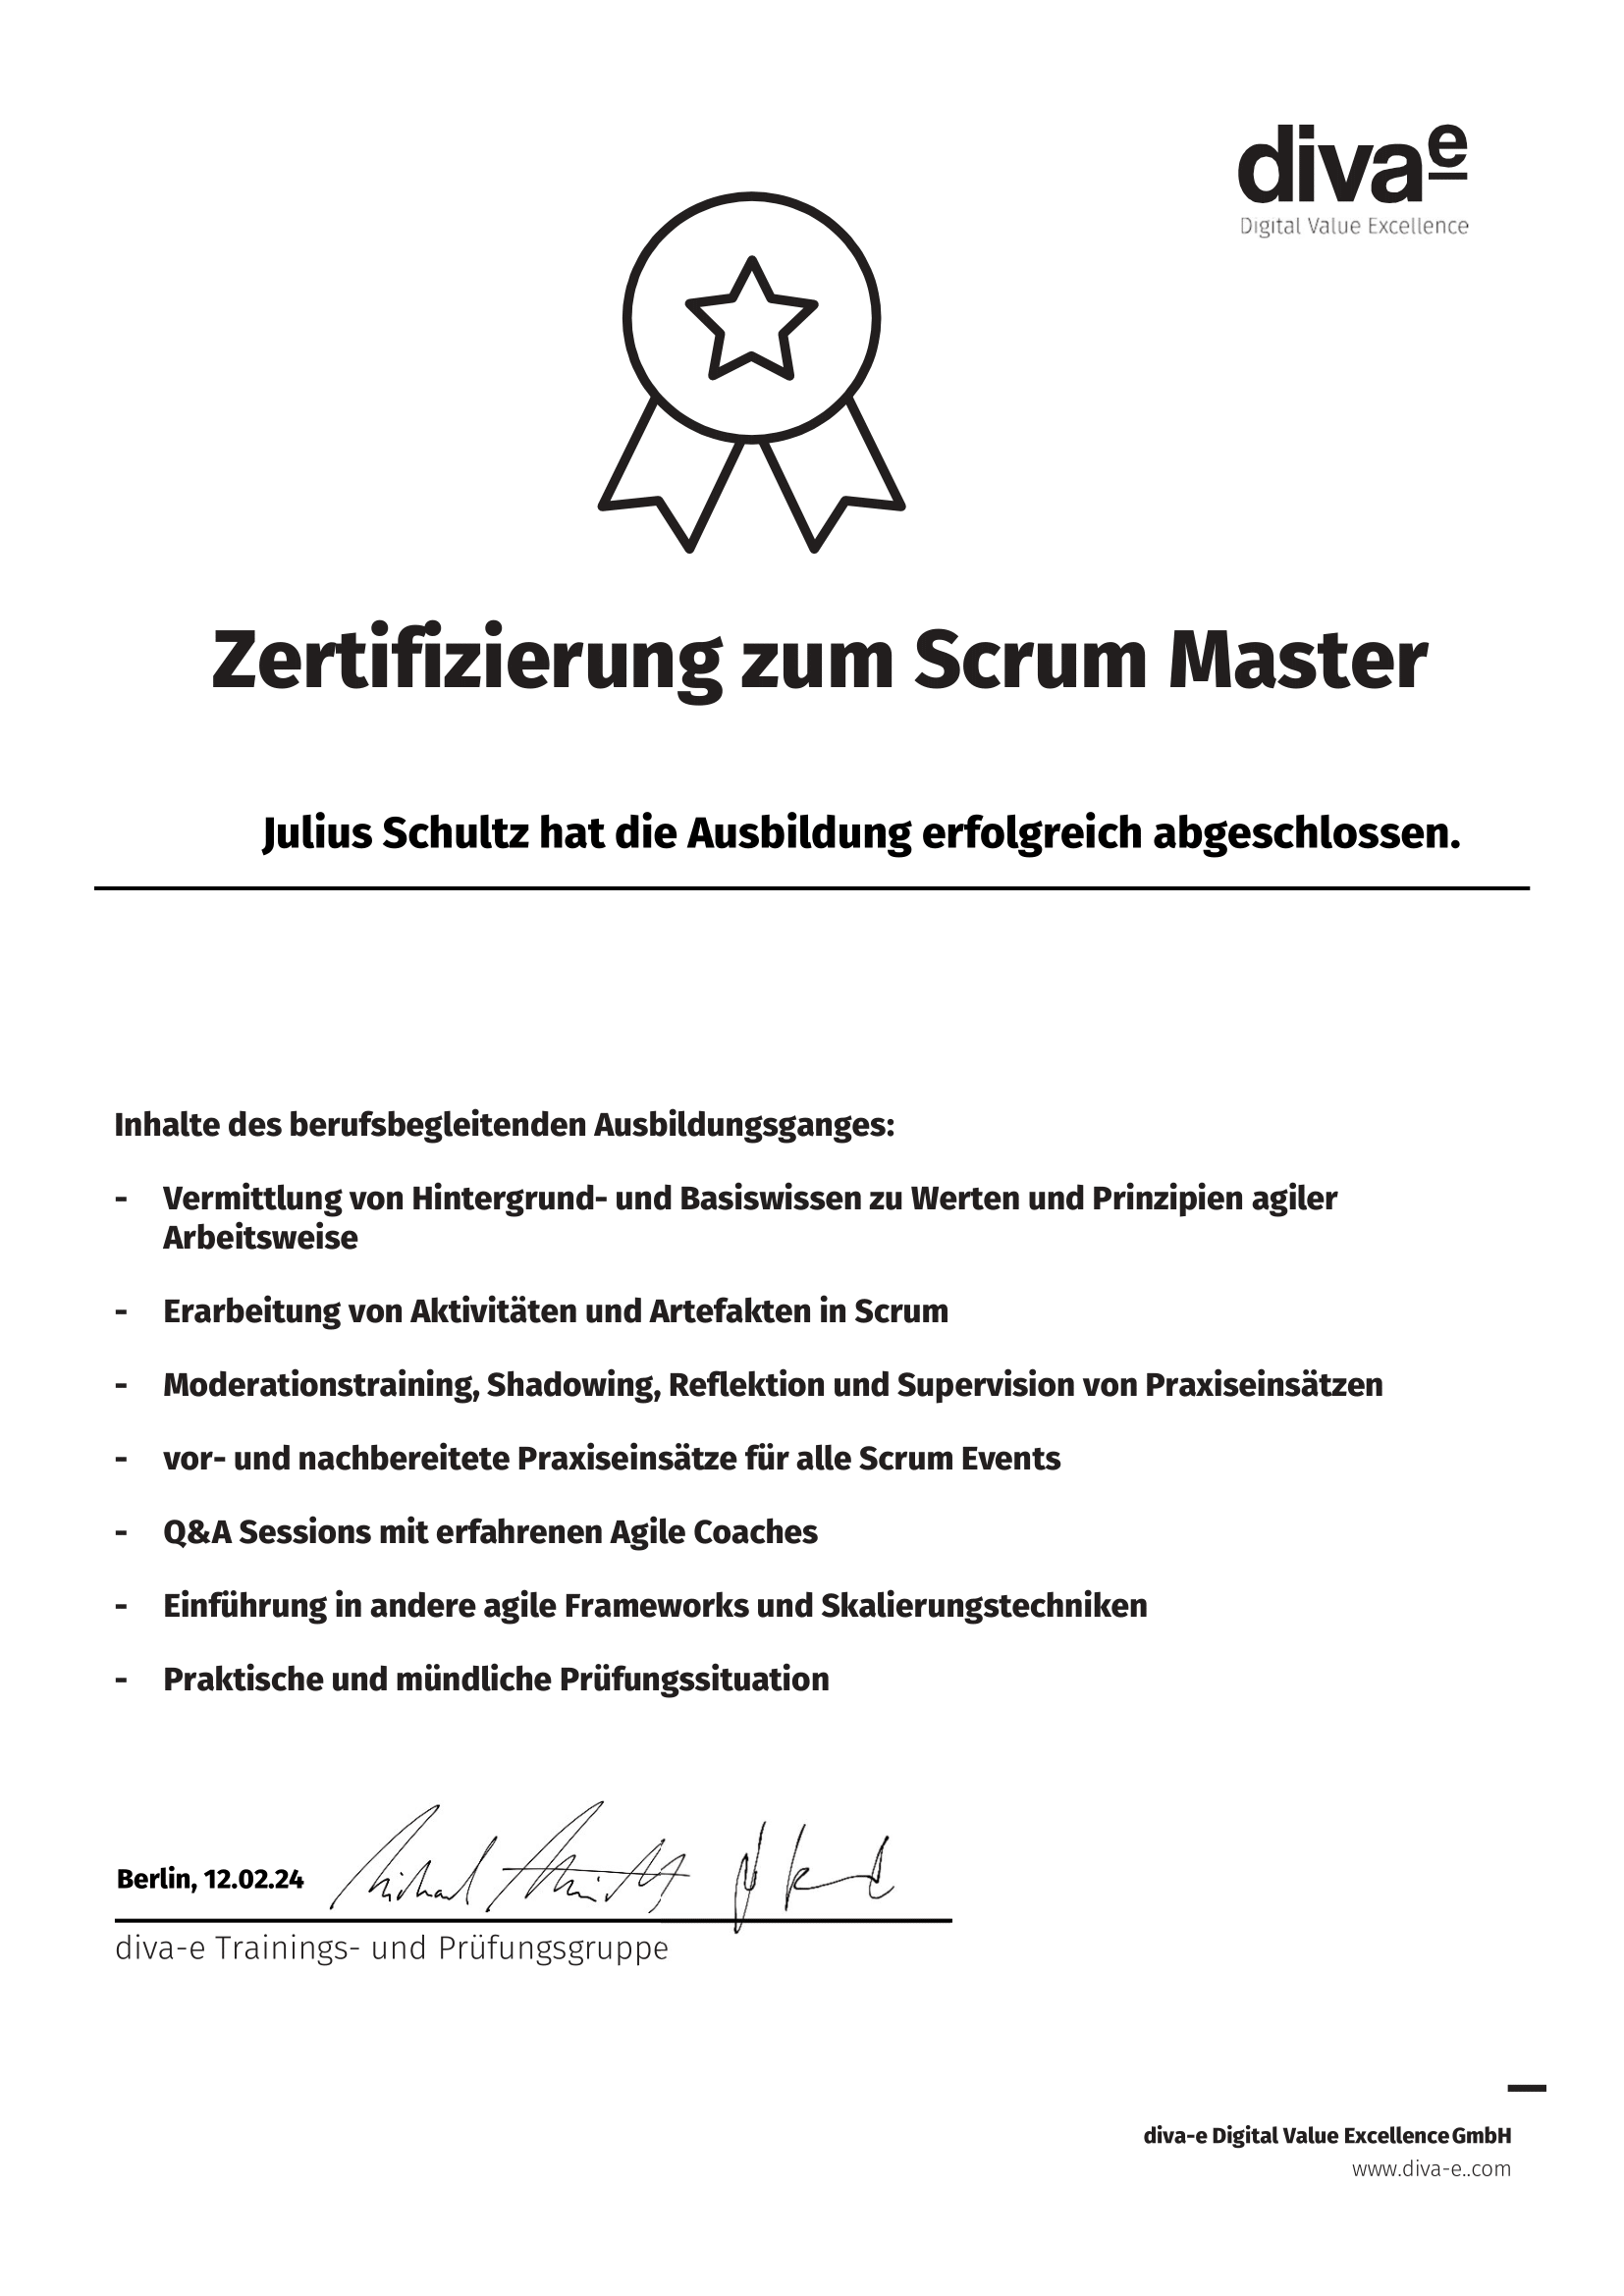 Scrum Master certificate